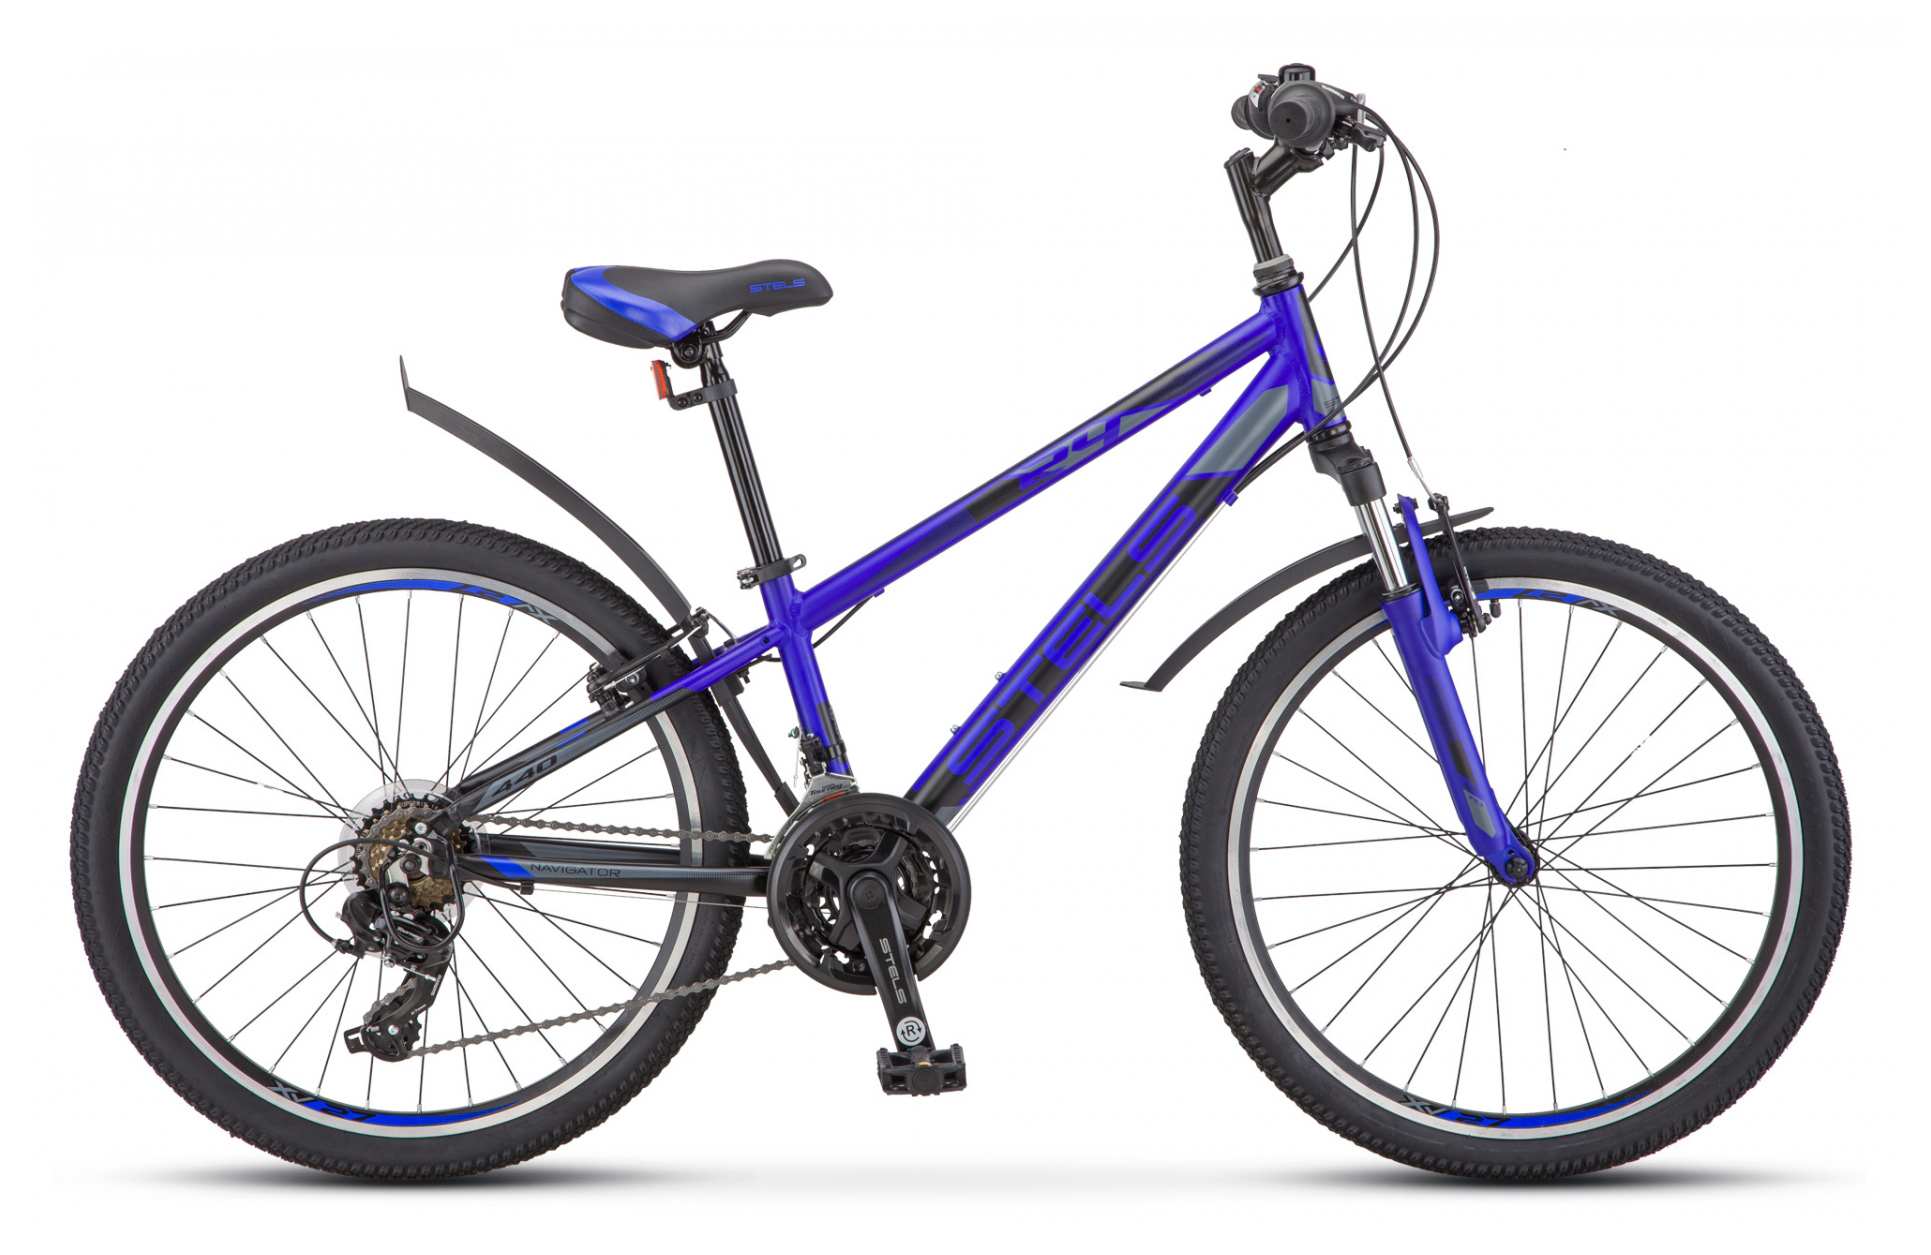  Отзывы о Подростковом велосипеде Stels Navigator 440 V 24 V030 2019